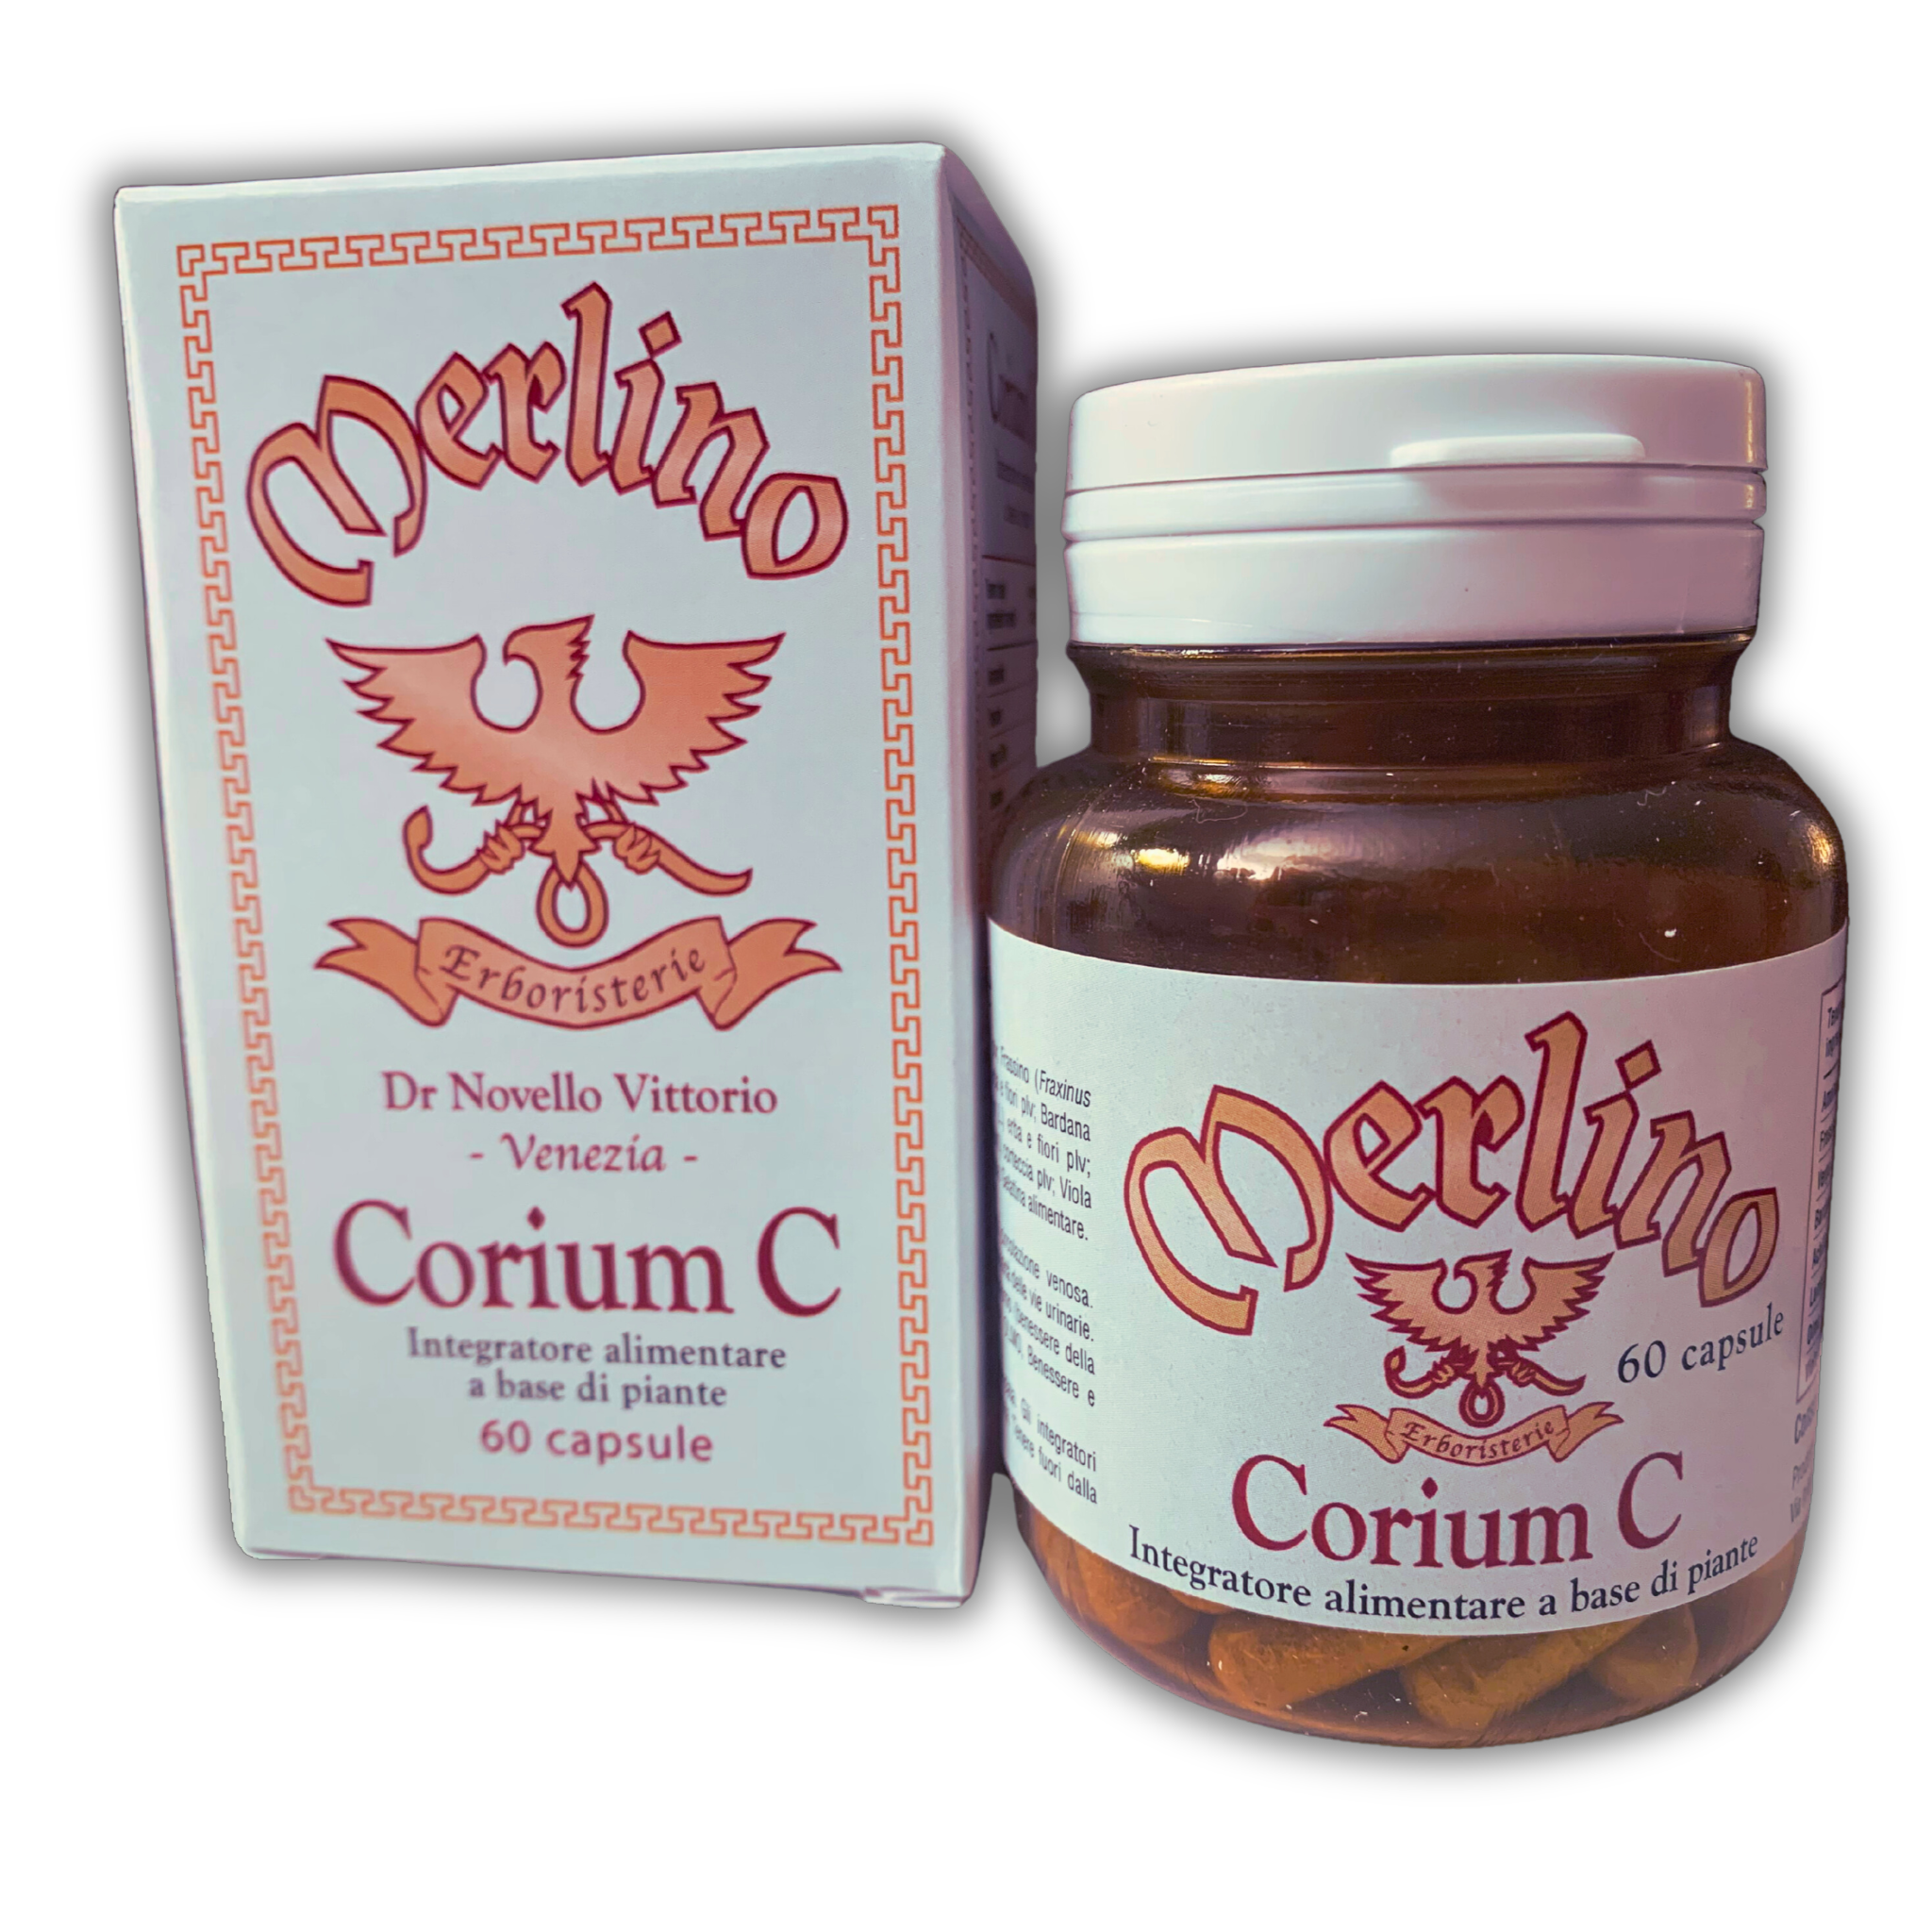 Corium C